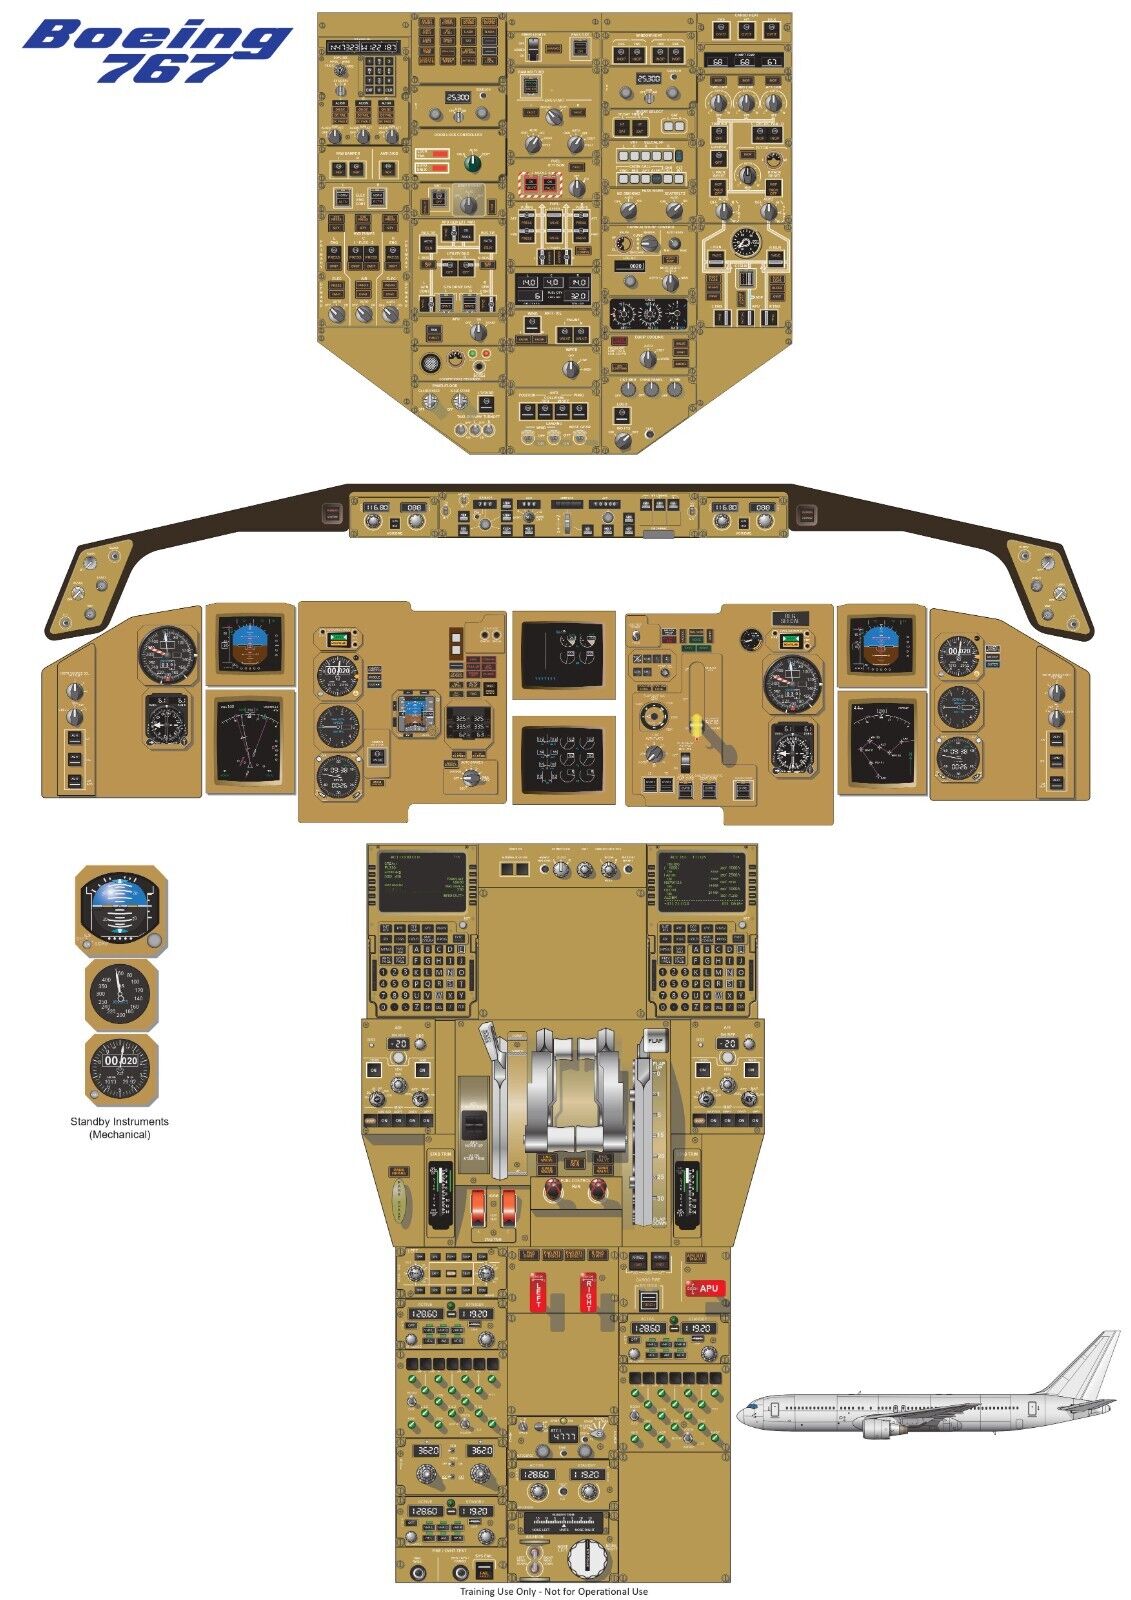 Boeing 767 / 300ER Cockpit Poster 24